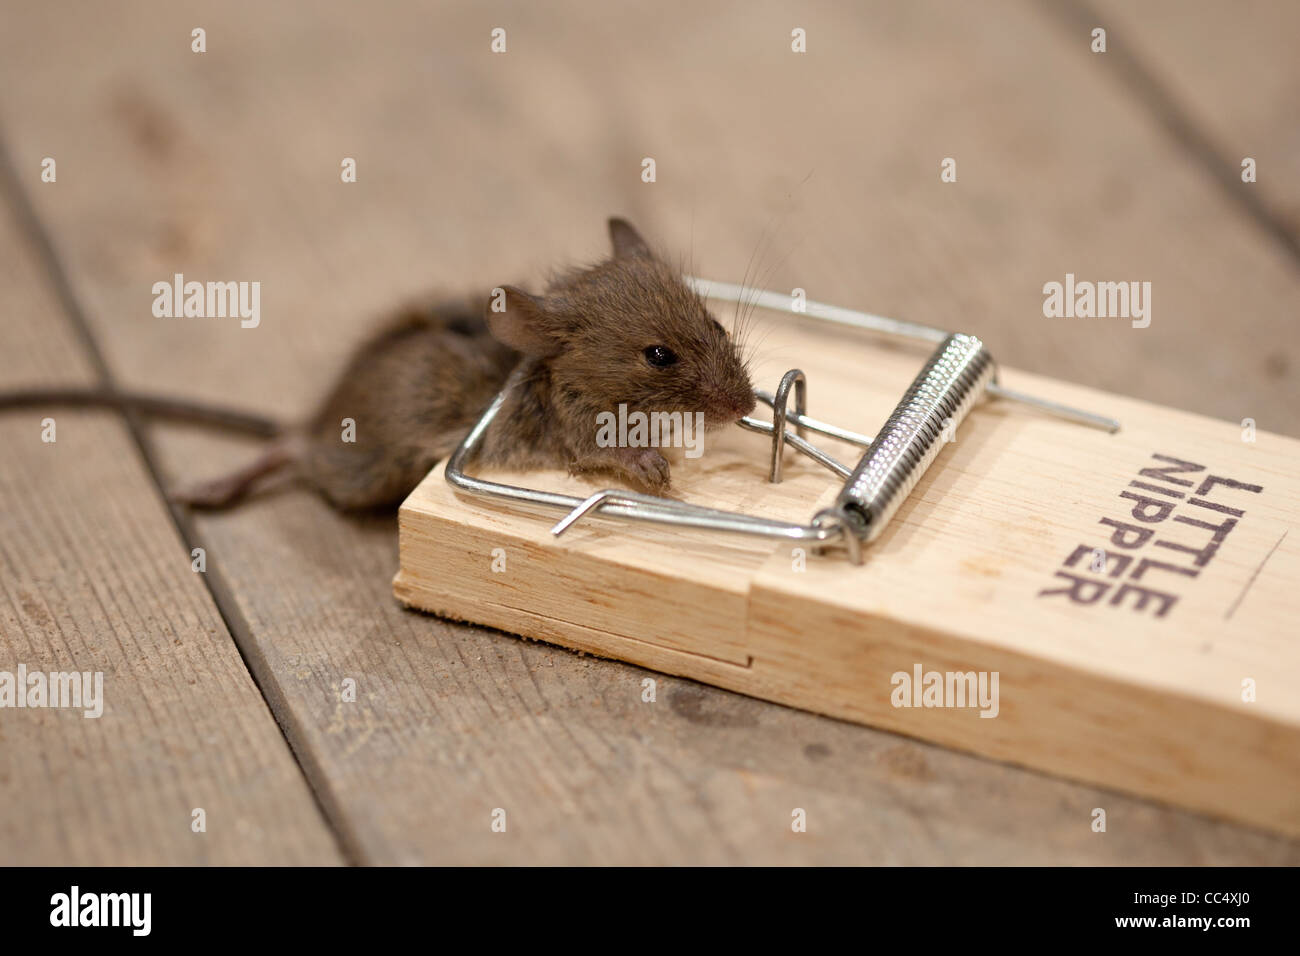 Topo morto nella trappola del mouse su tavoloni Foto Stock